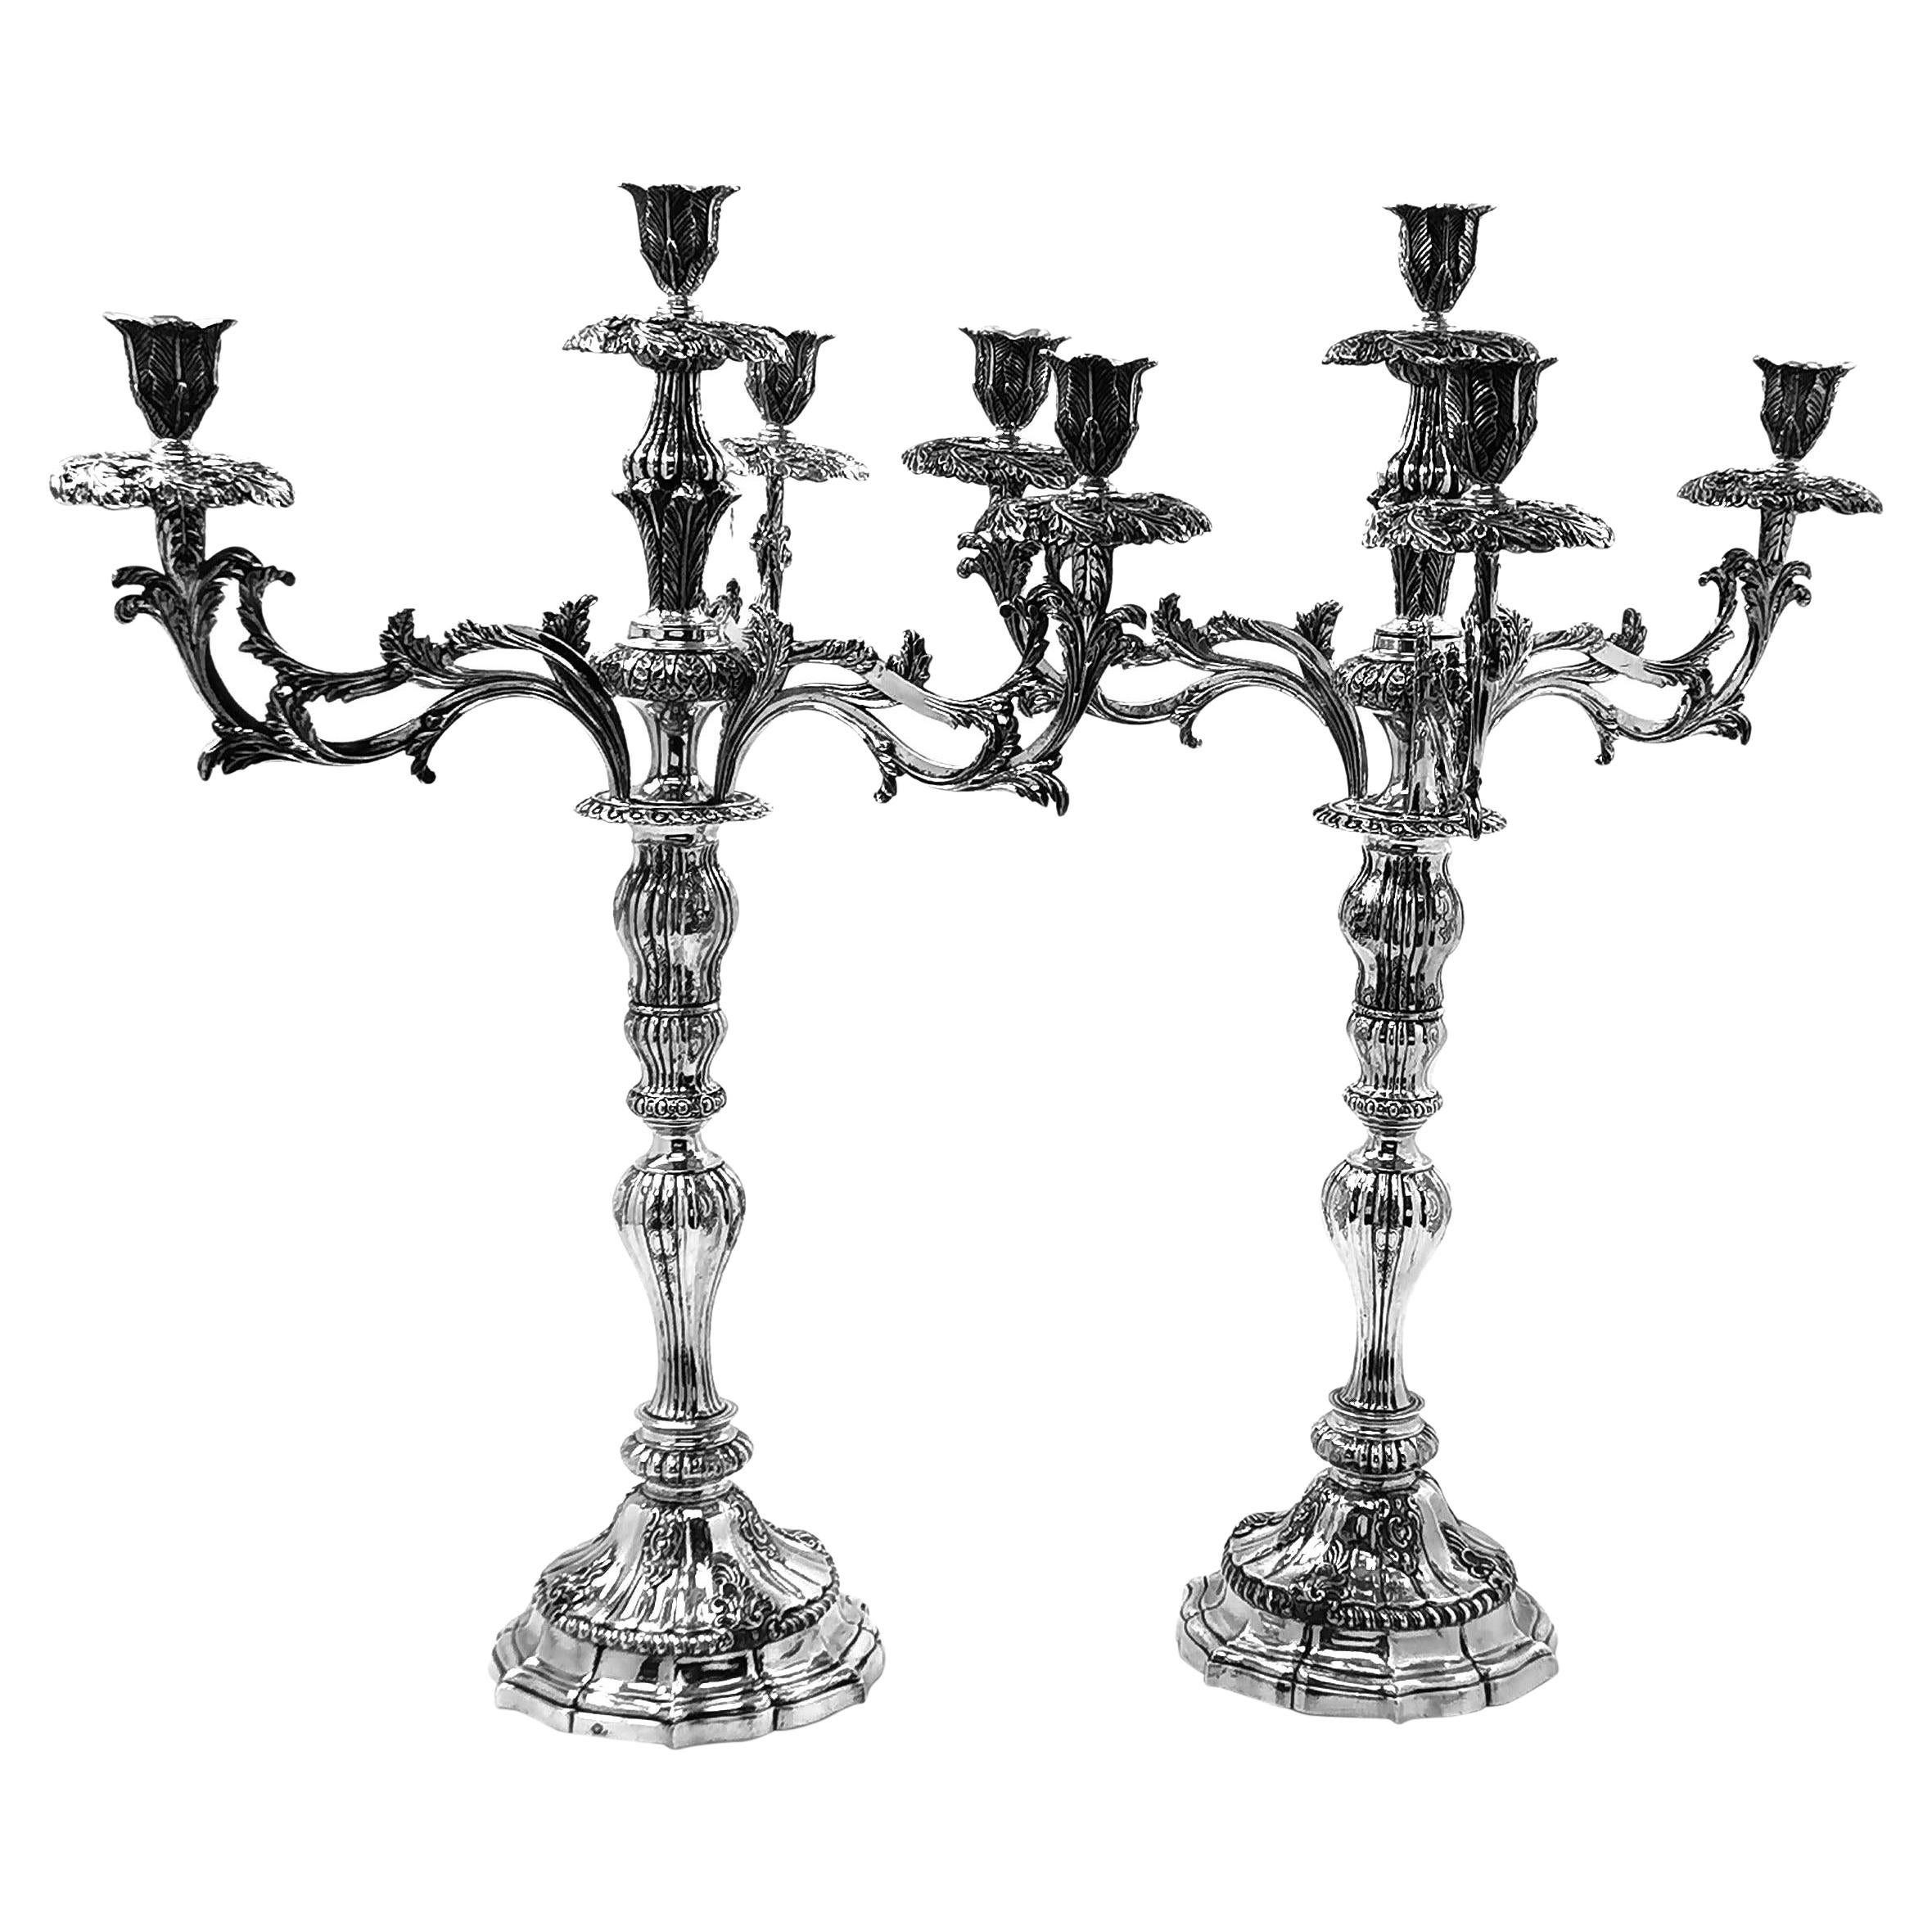 Paire rare de chandeliers portugais anciens en argent, c. 1800, pour bougeoirs du XIXe siècle